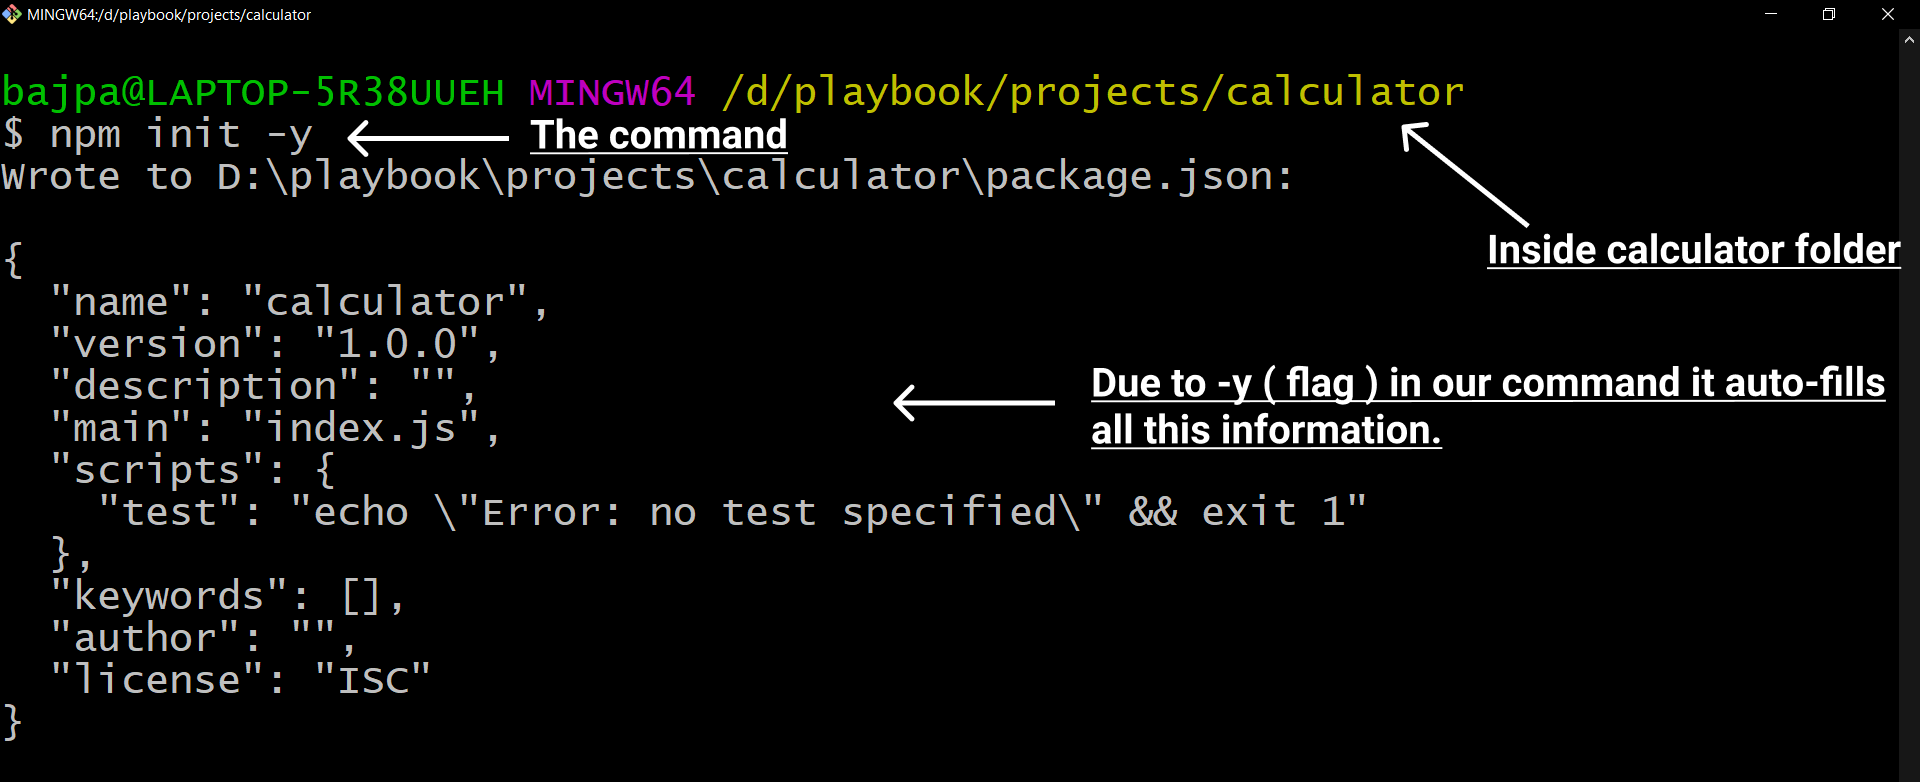  npm init command 